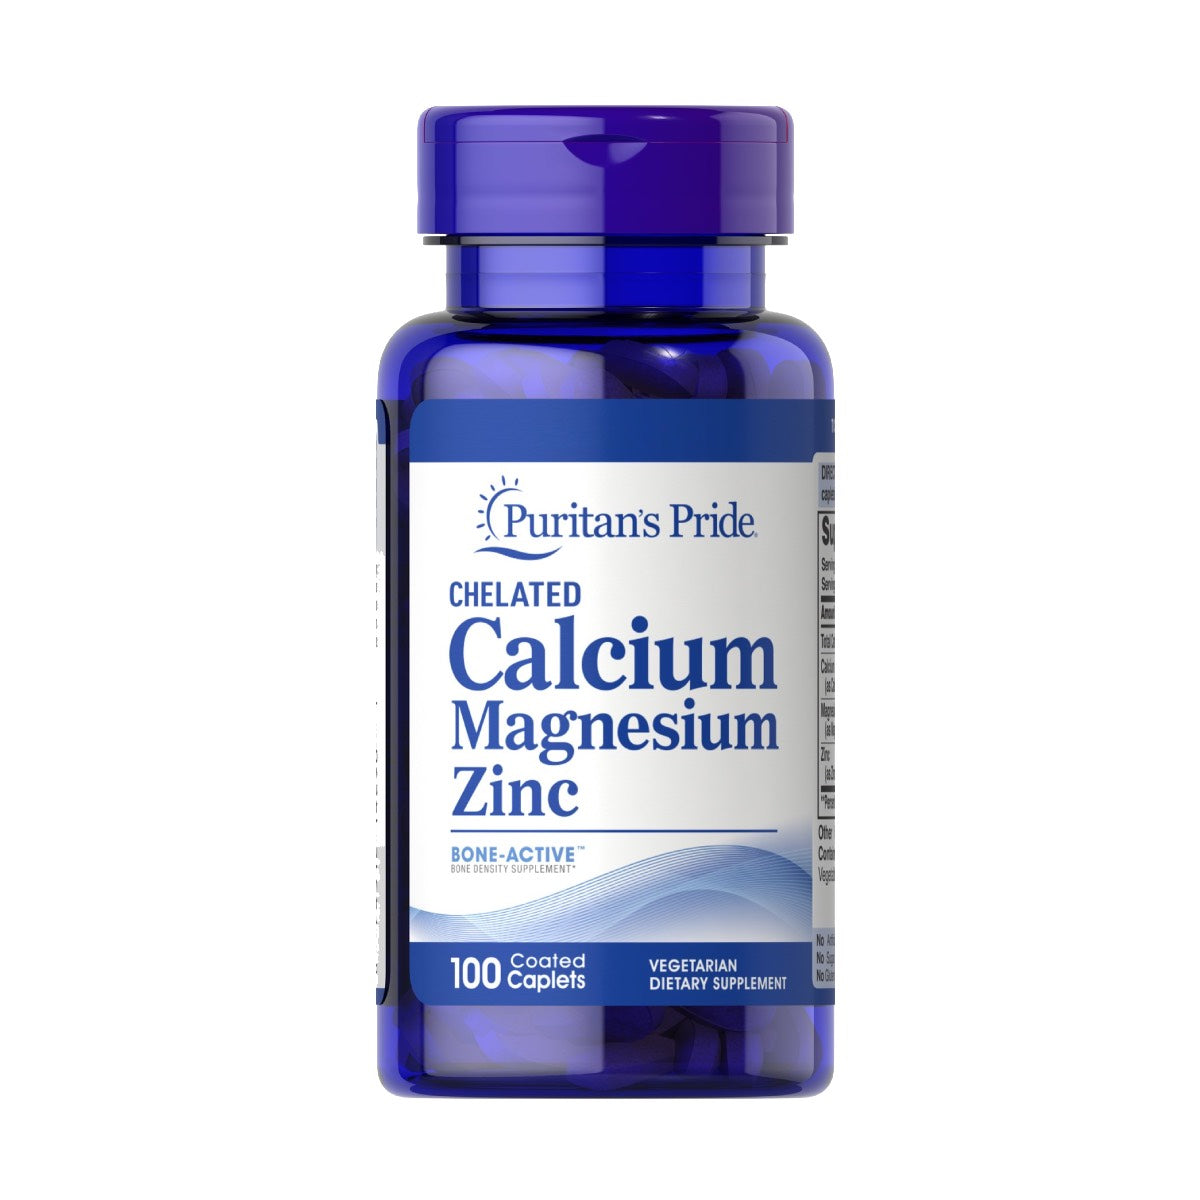 Puritan's Pride, Chelated Calcium Magnesium Zinc